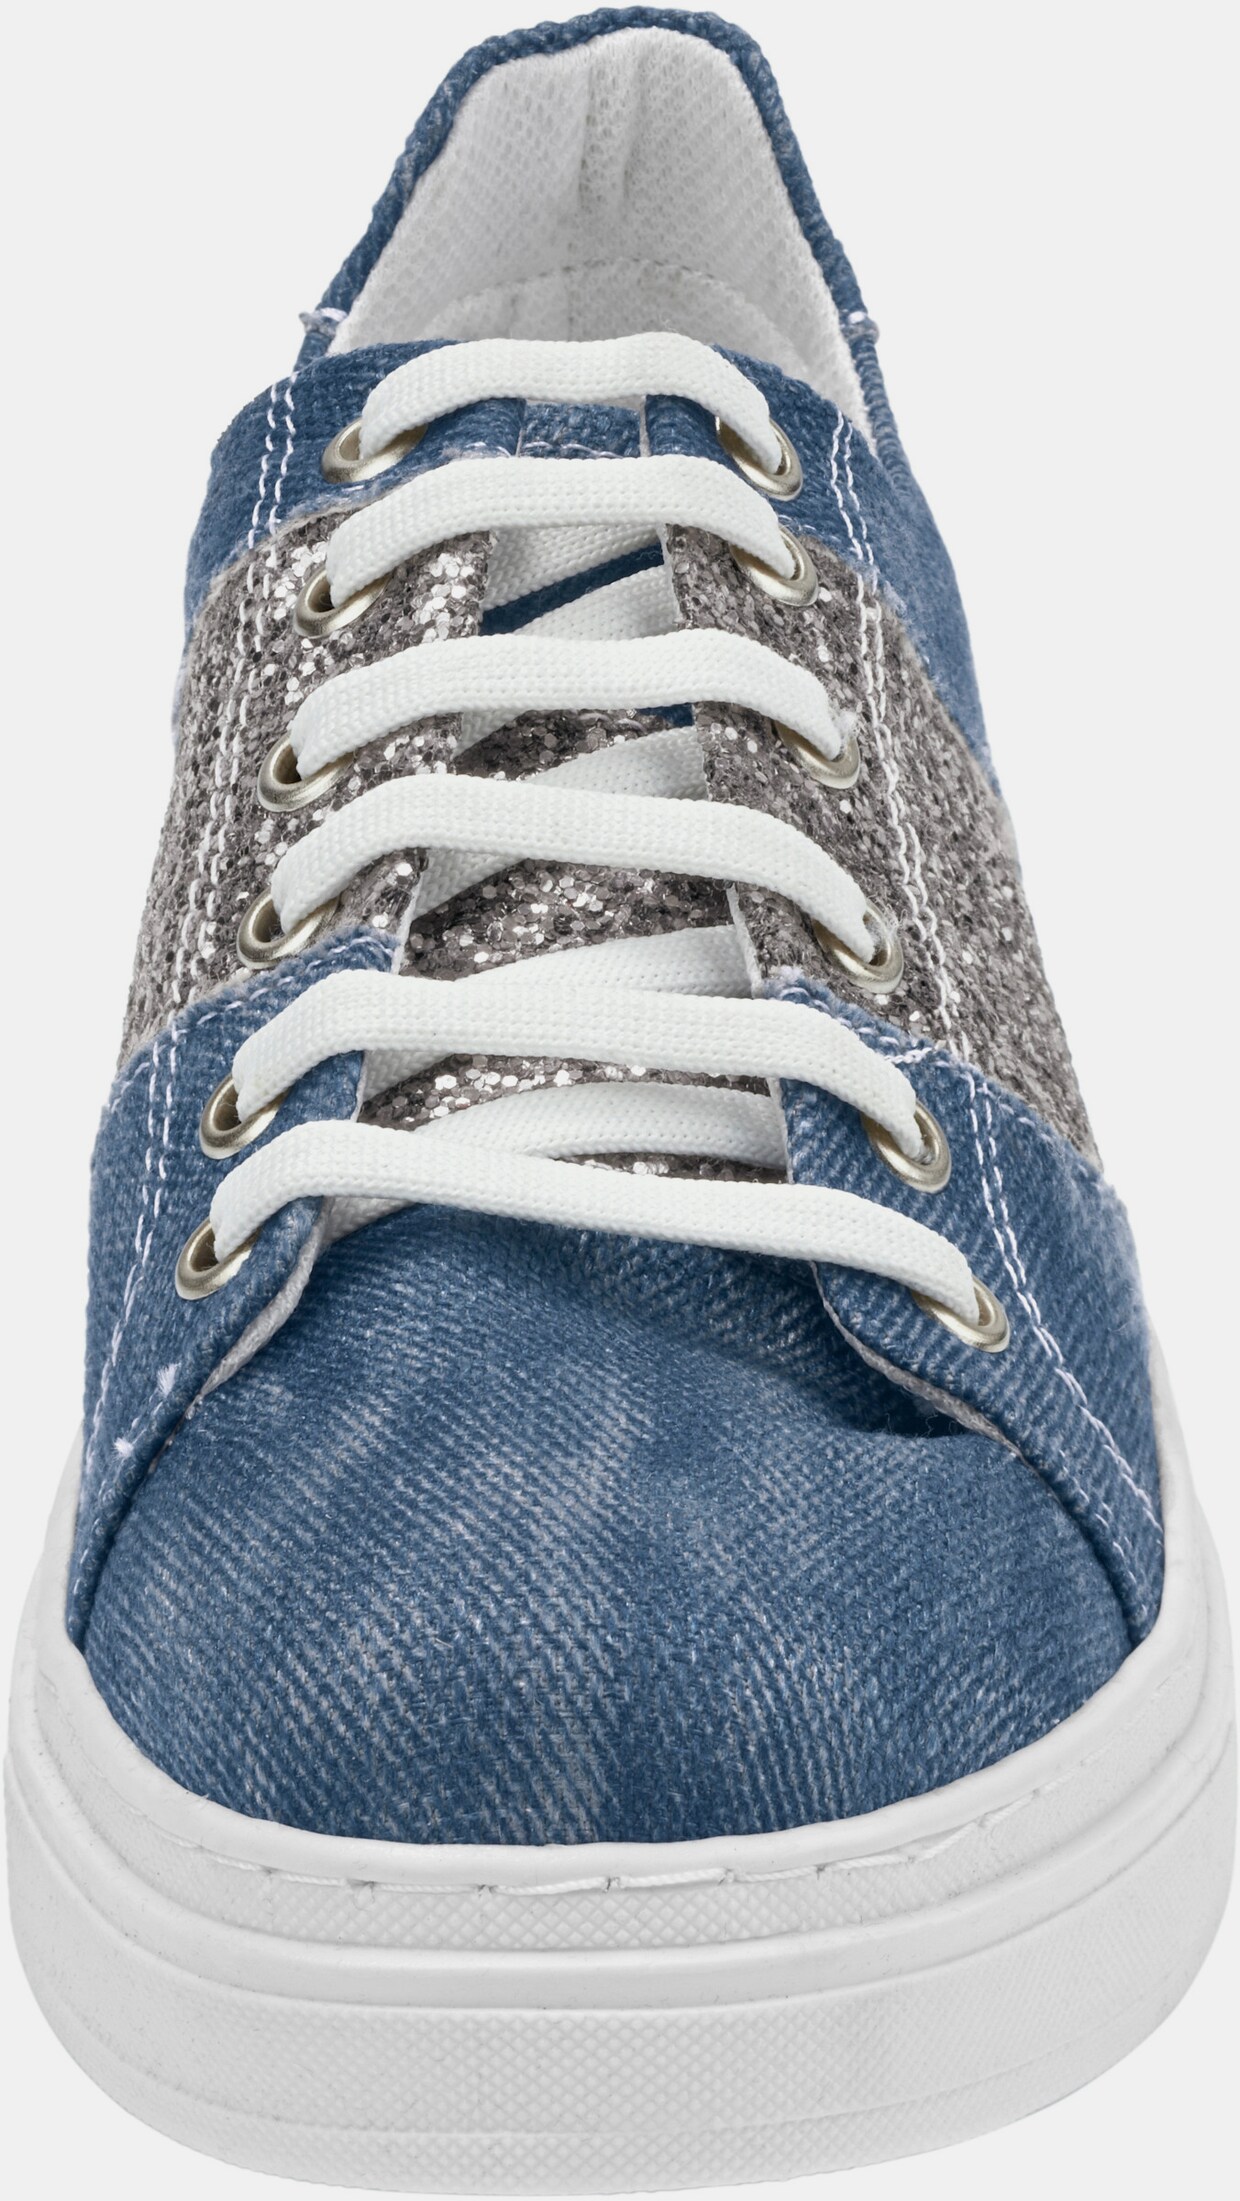 Andrea Conti Sneaker - jeansblauw/zilverkleurig